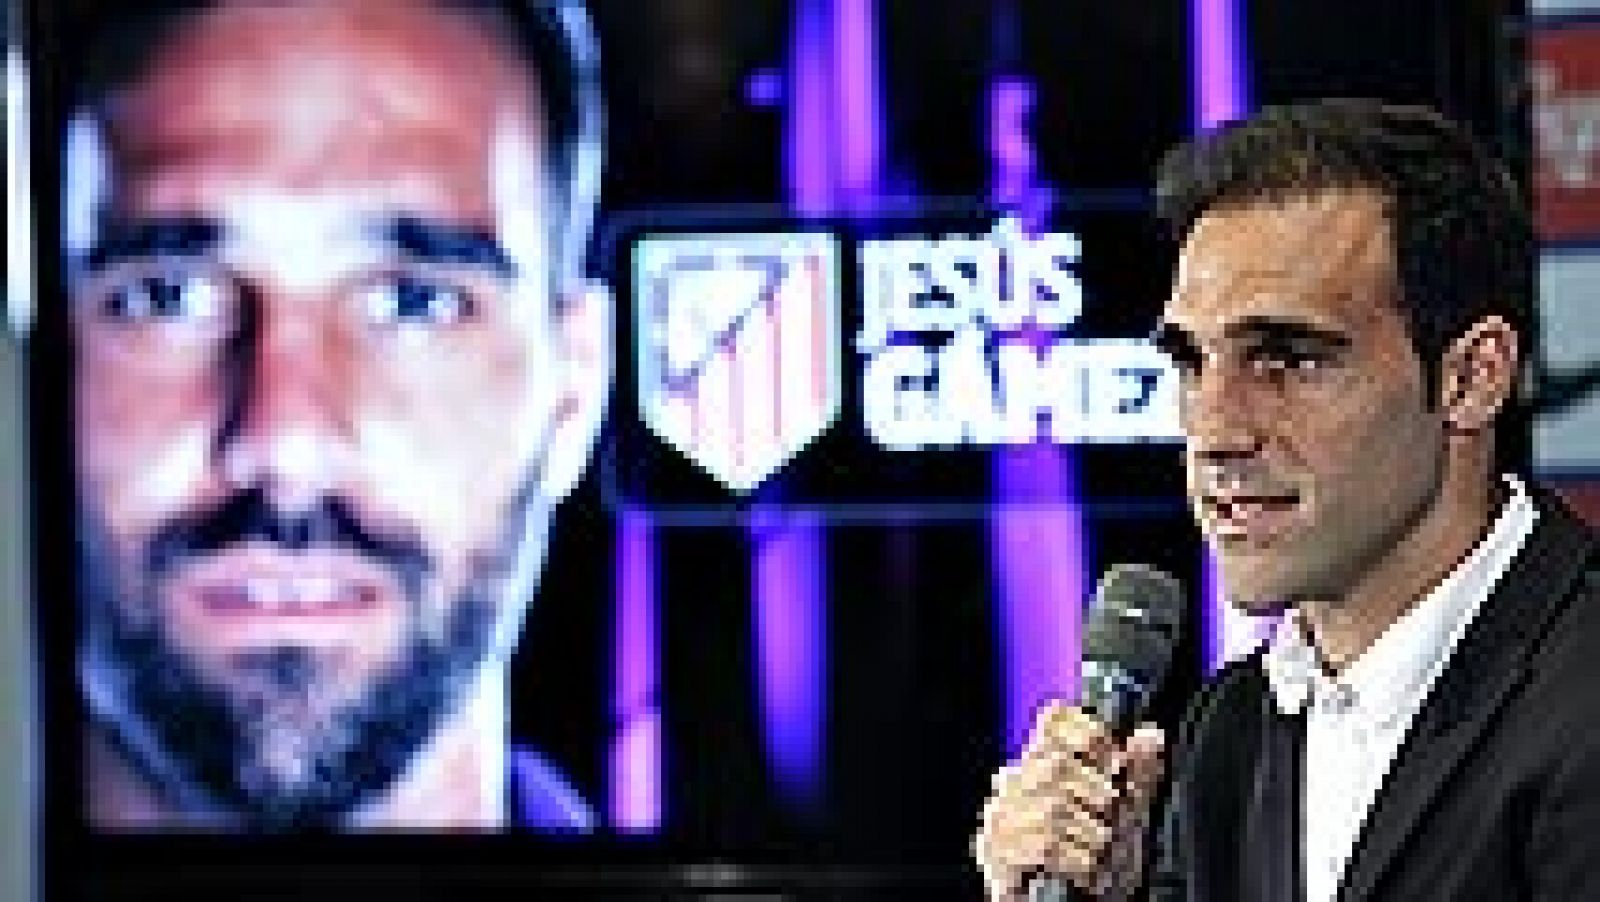 El defensa Jesús Gámez, presentado hoy como nuevo jugador del Atlético de Madrid por las próximas tres temporadas, afirmó que "no hay favorito" en la Supercopa de España tras el 1-1 del encuentro de ida en el Santiago Bernabéu y remarcó que el equipo